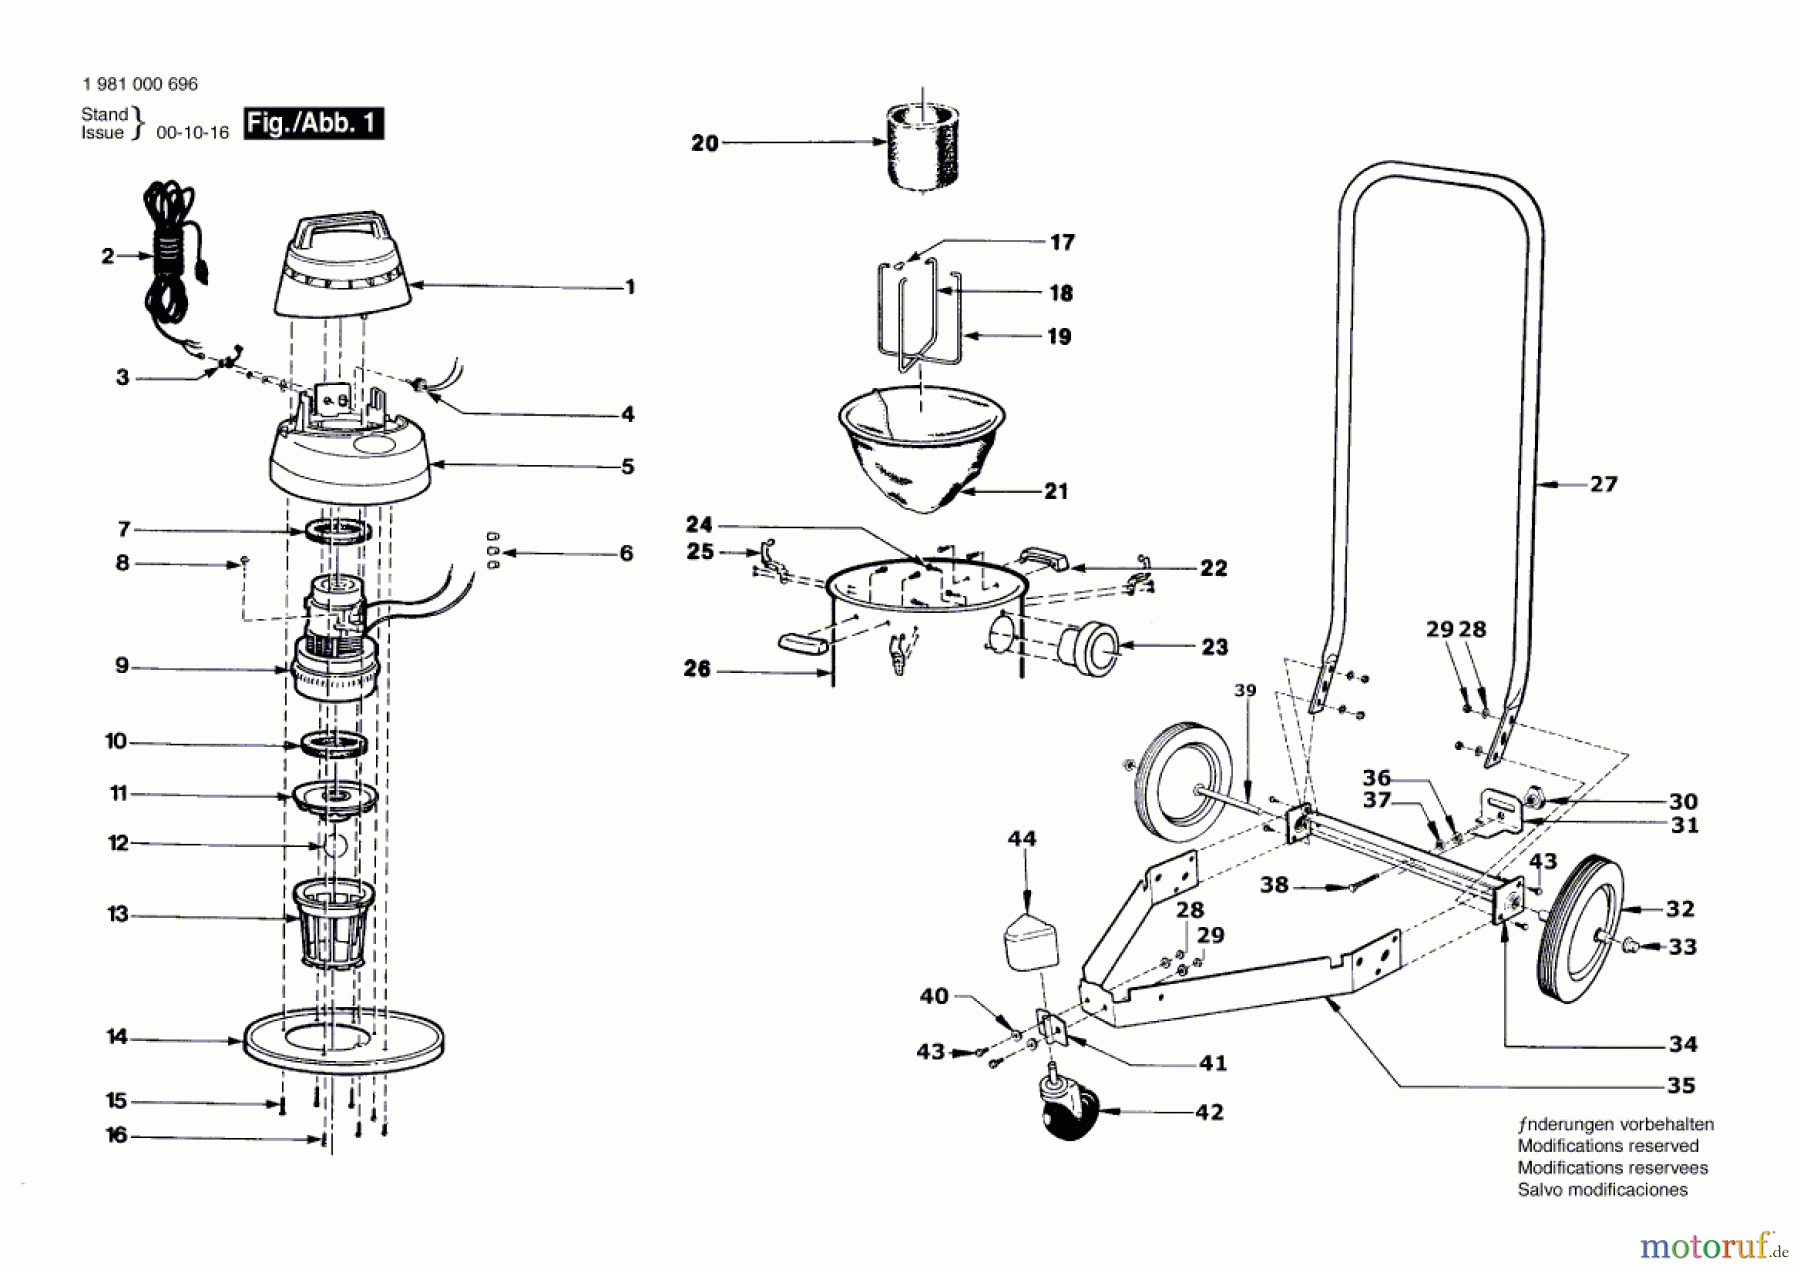  Bosch Werkzeug Allzwecksauger 1702 Seite 1